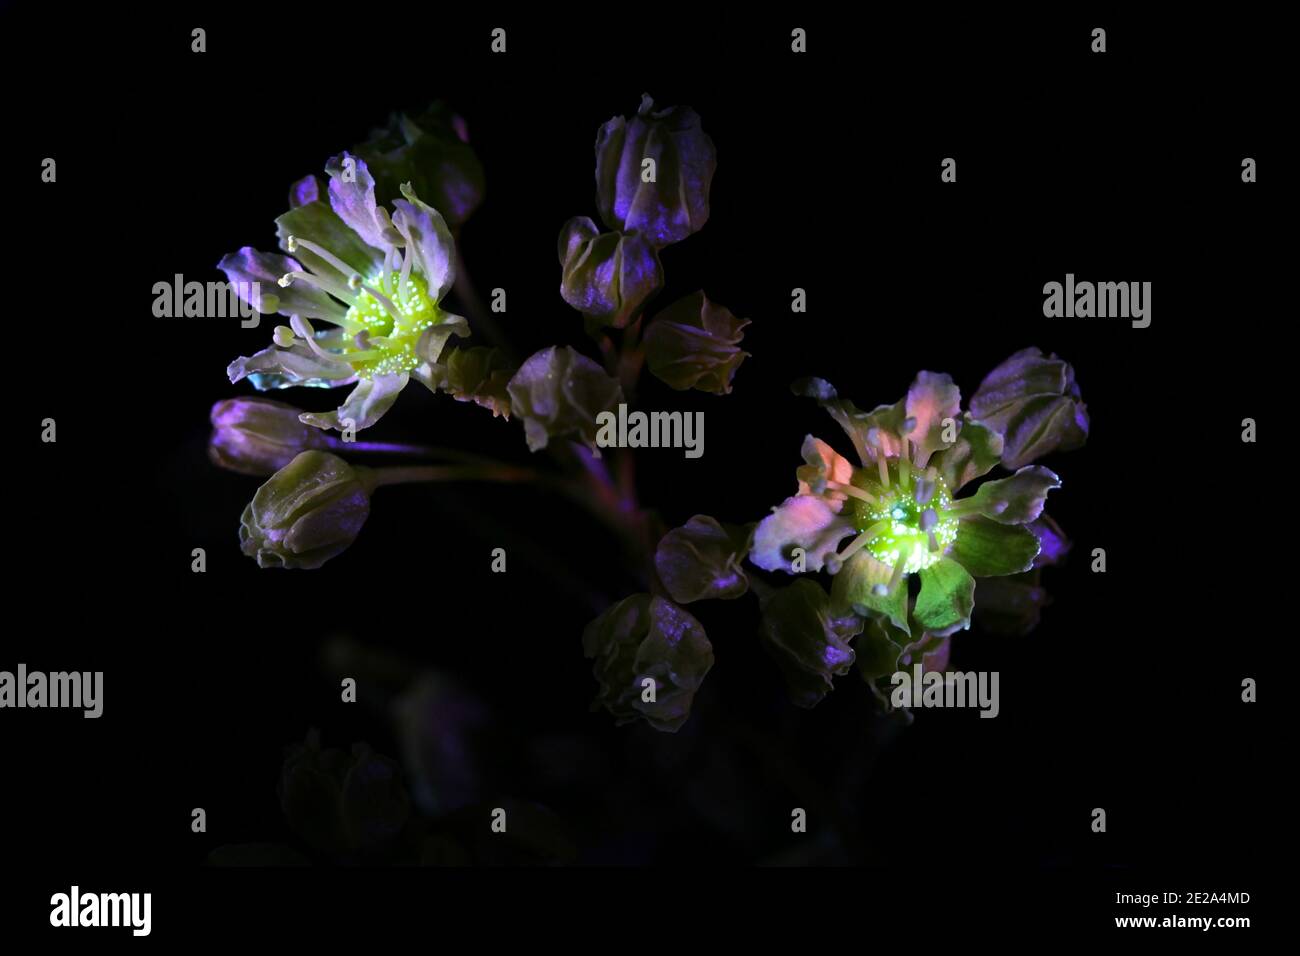 Fleurs d'érable, Acer platanoides, photographiées dans des rayons ultraviolets (365 nm) Banque D'Images